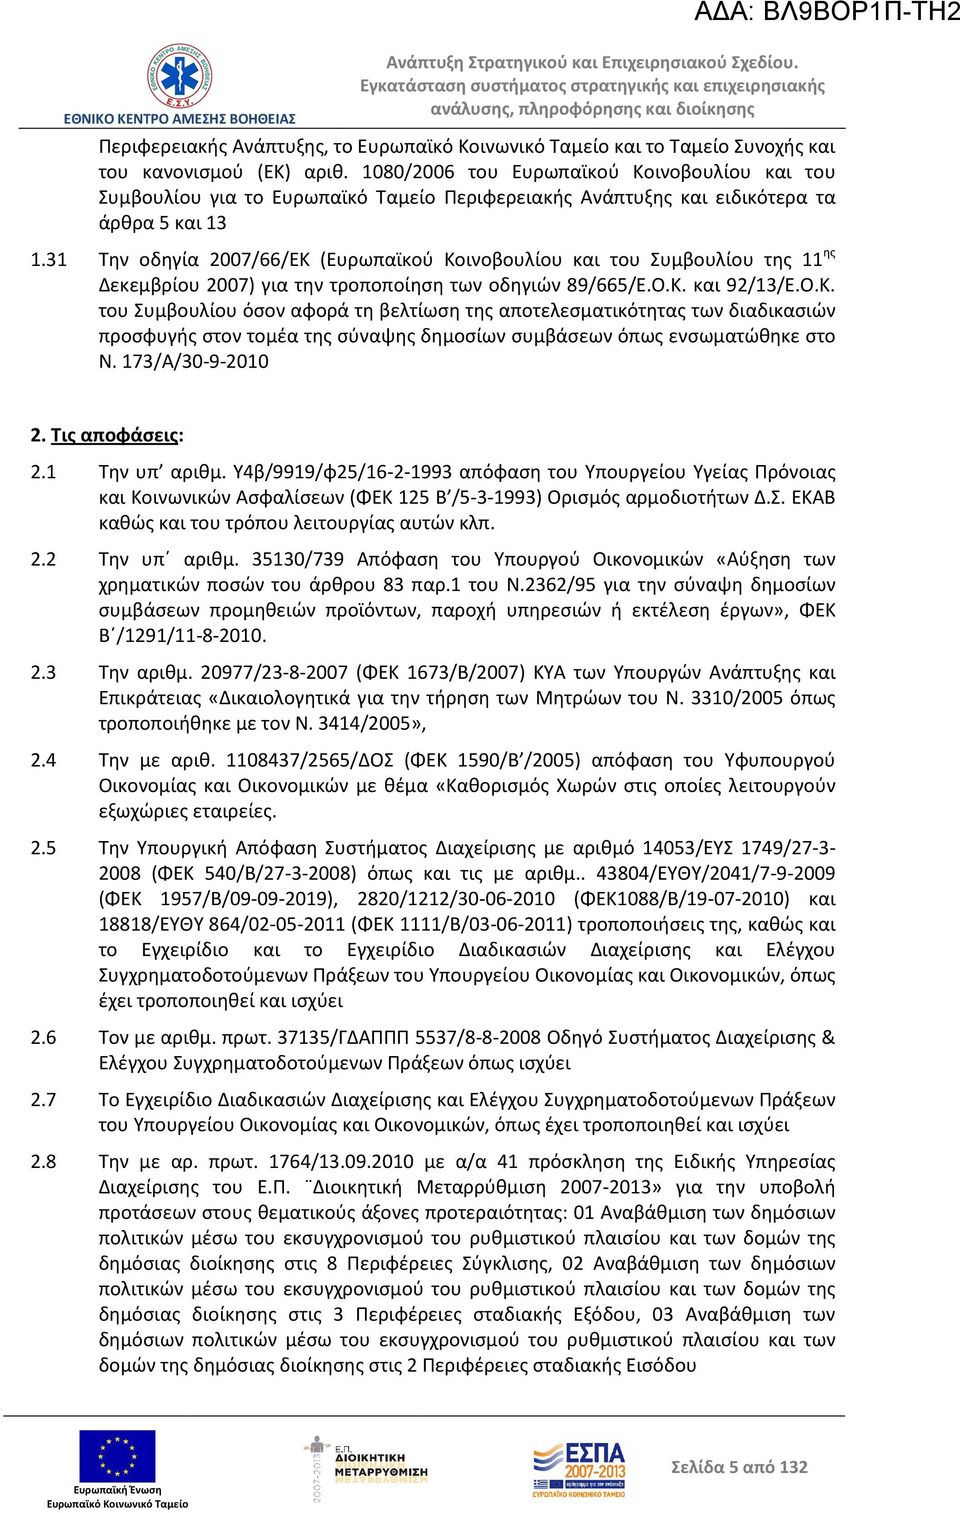 31 Την οδηγία 2007/66/ΕΚ (Ευρωπαϊκού Κοινοβουλίου και του Συμβουλίου της 11 ης Δεκεμβρίου 2007) για την τροποποίηση των οδηγιών 89/665/Ε.Ο.Κ. και 92/13/Ε.Ο.Κ. του Συμβουλίου όσον αφορά τη βελτίωση της αποτελεσματικότητας των διαδικασιών προσφυγής στον τομέα της σύναψης δημοσίων συμβάσεων όπως ενσωματώθηκε στο Ν.